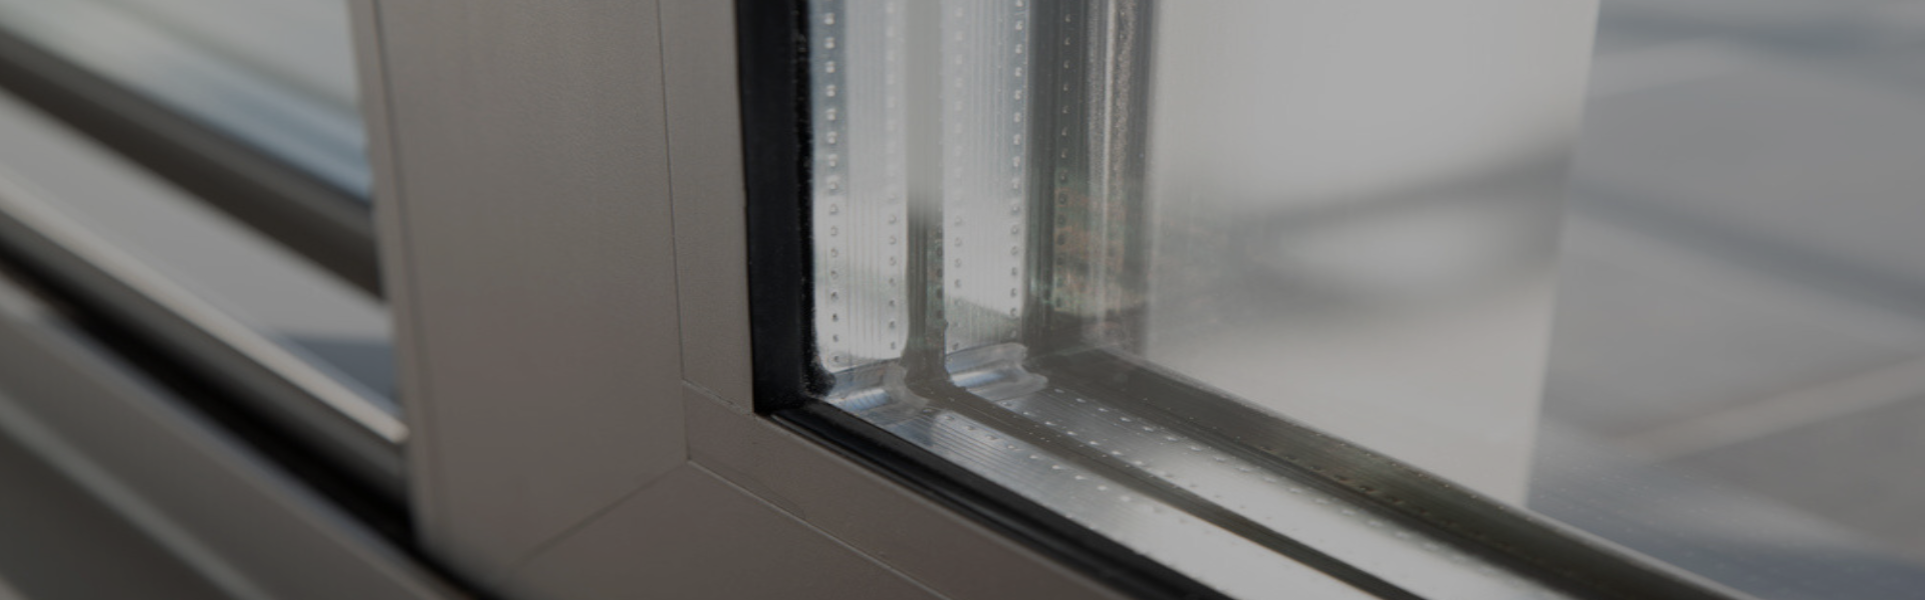 Slider Aluminium Windows, Glaziers in Dalston, E8